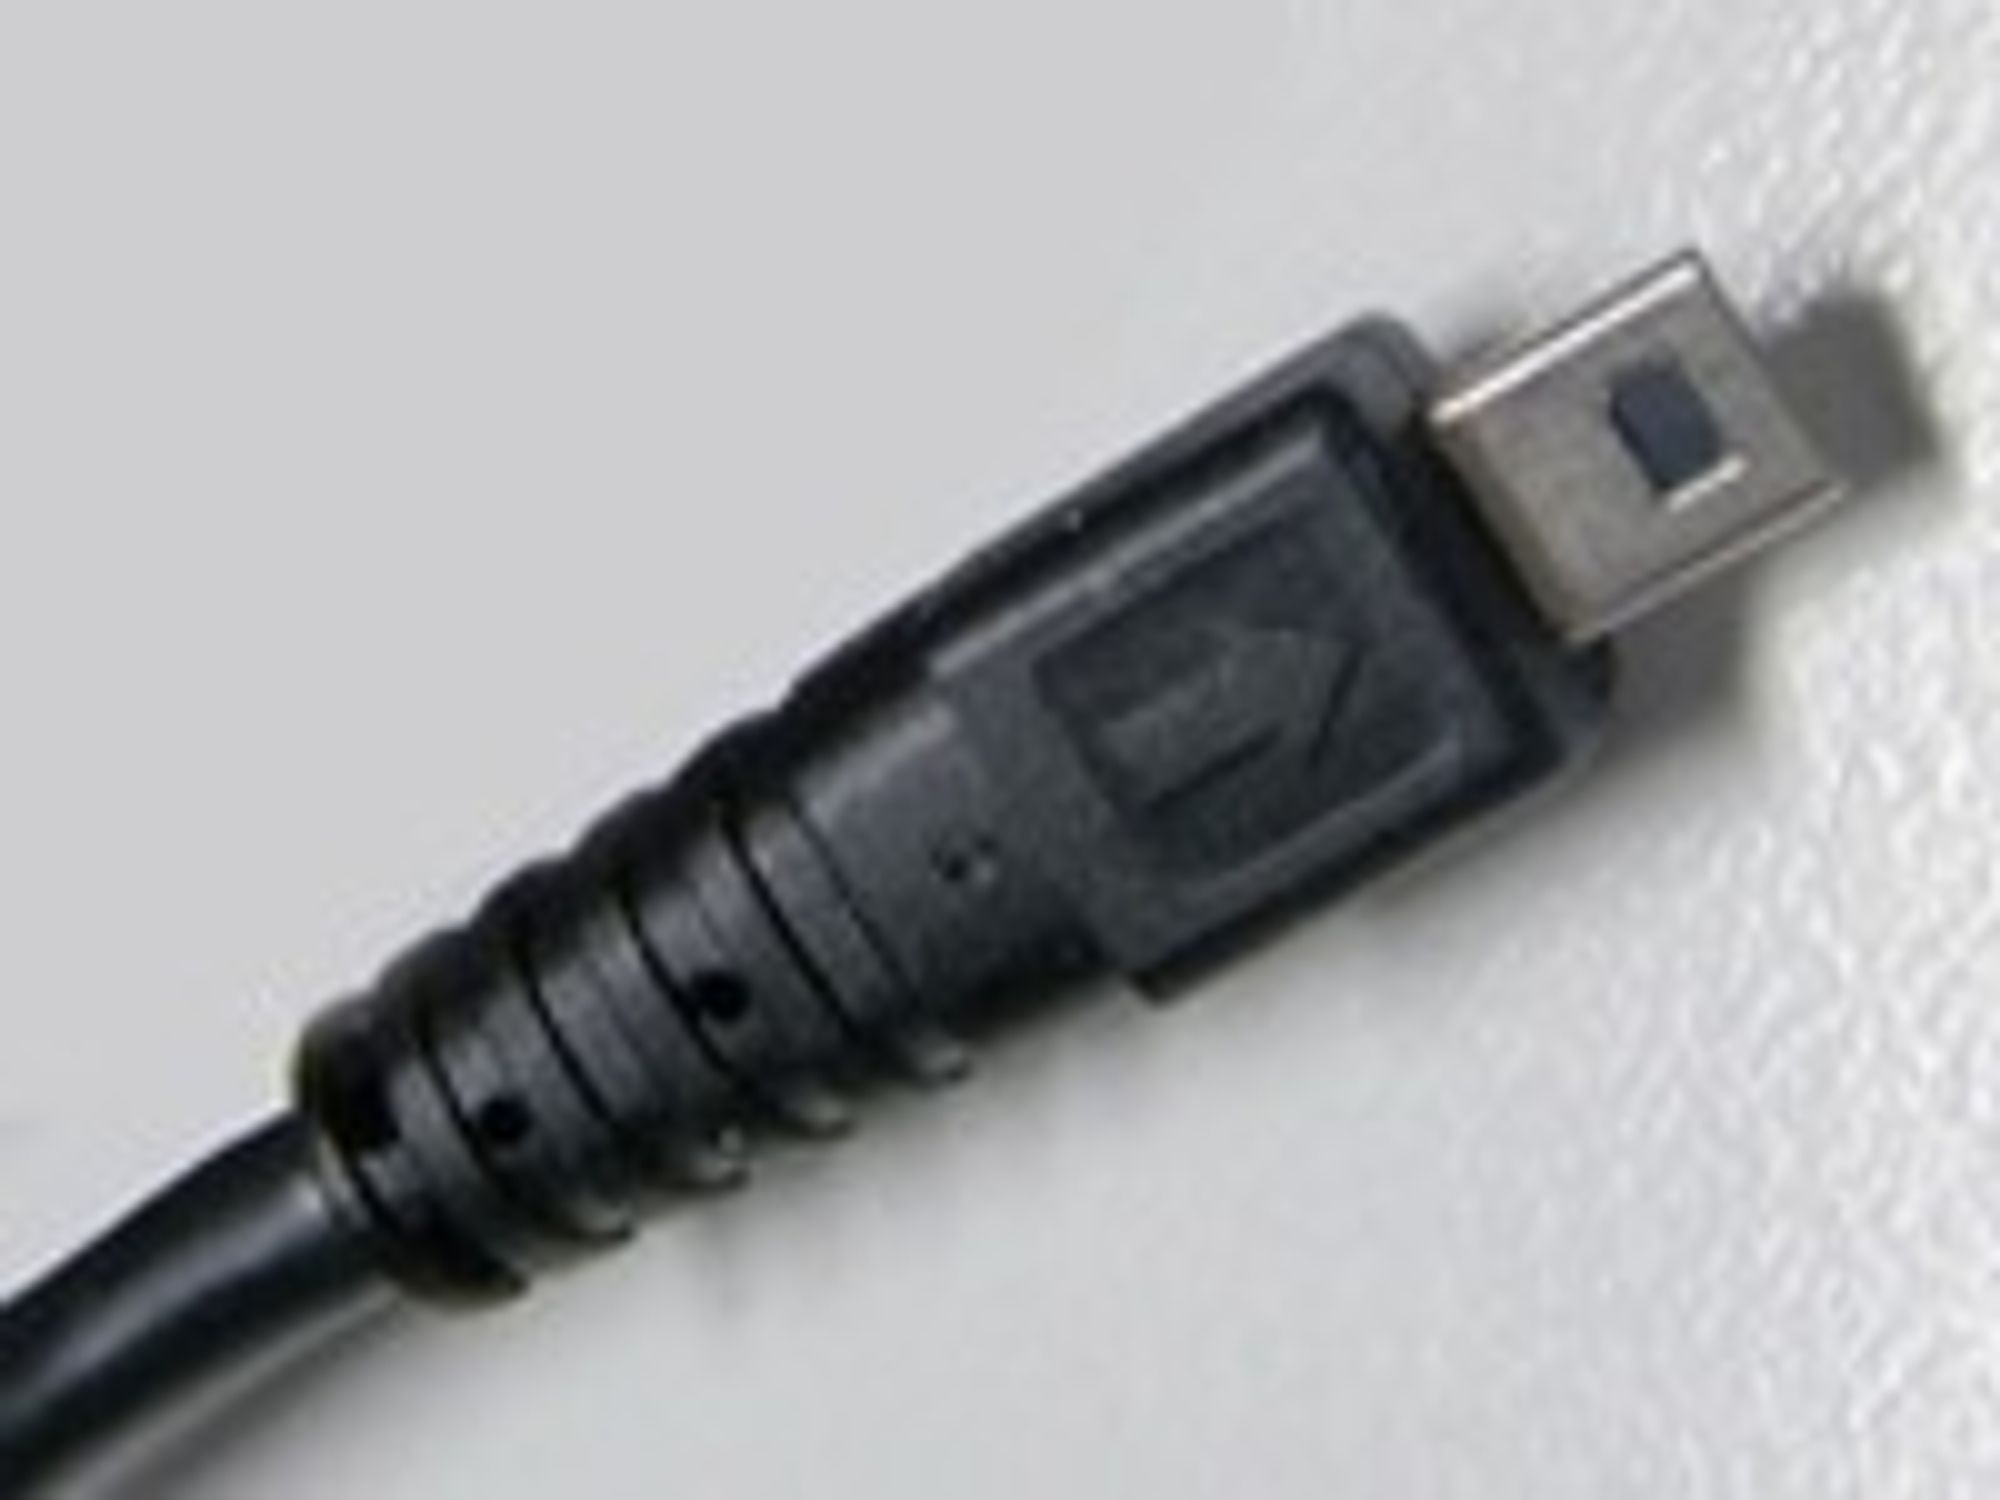 Fra 2010 skal alle nye mobiltelefoner i EU kunne lades over Micro USB.